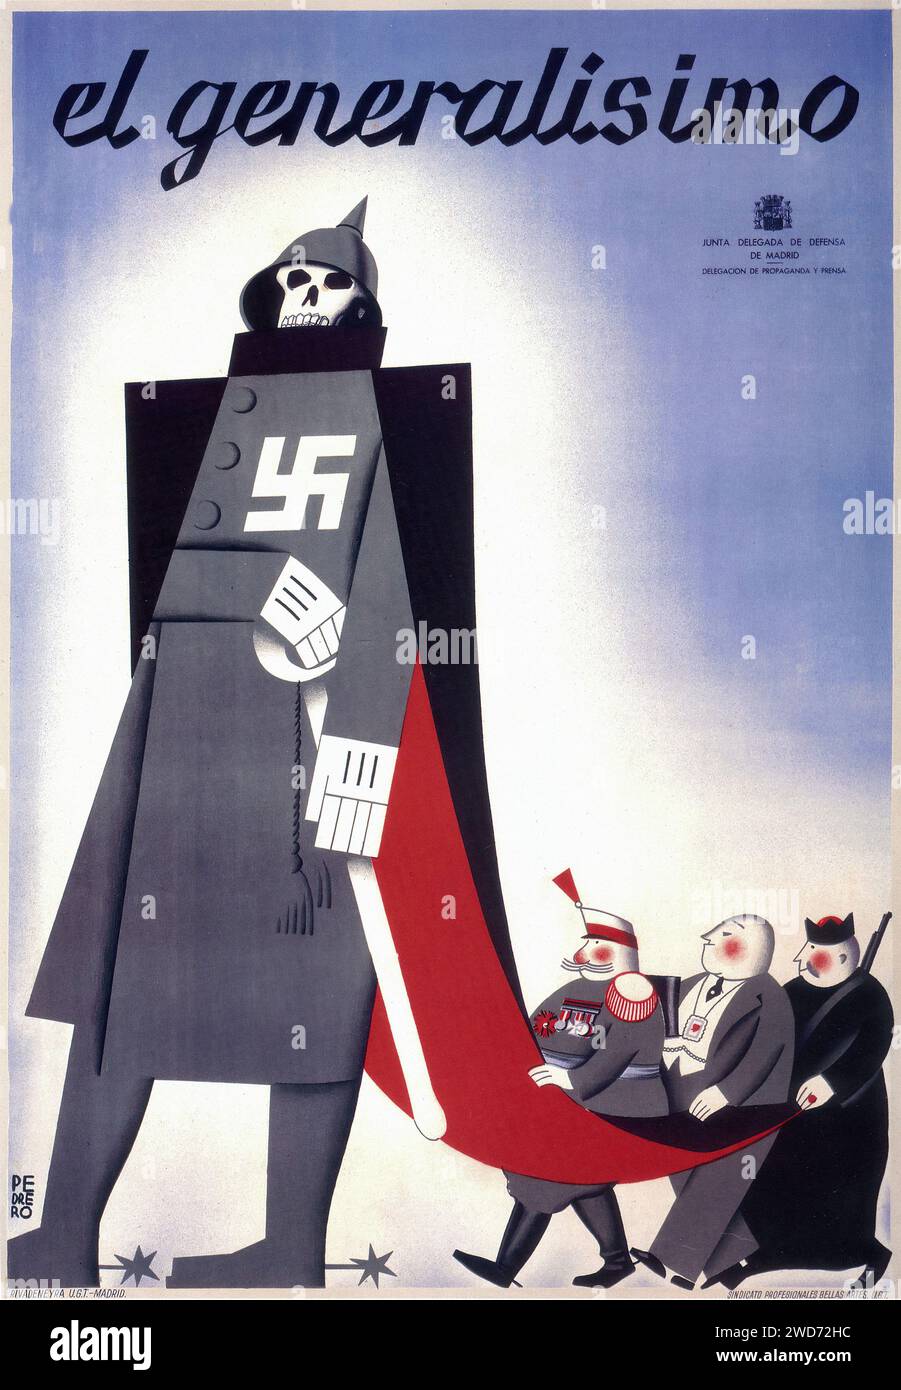 "el Generalísimo" mit einer Karikatur von Franco und Symbolen von Nazi-Deutschland Eine satirische Darstellung von Franco als Marionettenmeister, der kleinere Figuren kontrolliert, mit einem bedrohlichen Schädel und Hakenkreuzen, die seine Verbindung mit Nazi-Deutschland kritisieren - spanischer Bürgerkrieg (Guerra Civil Española) Propagandaplakat Stockfoto